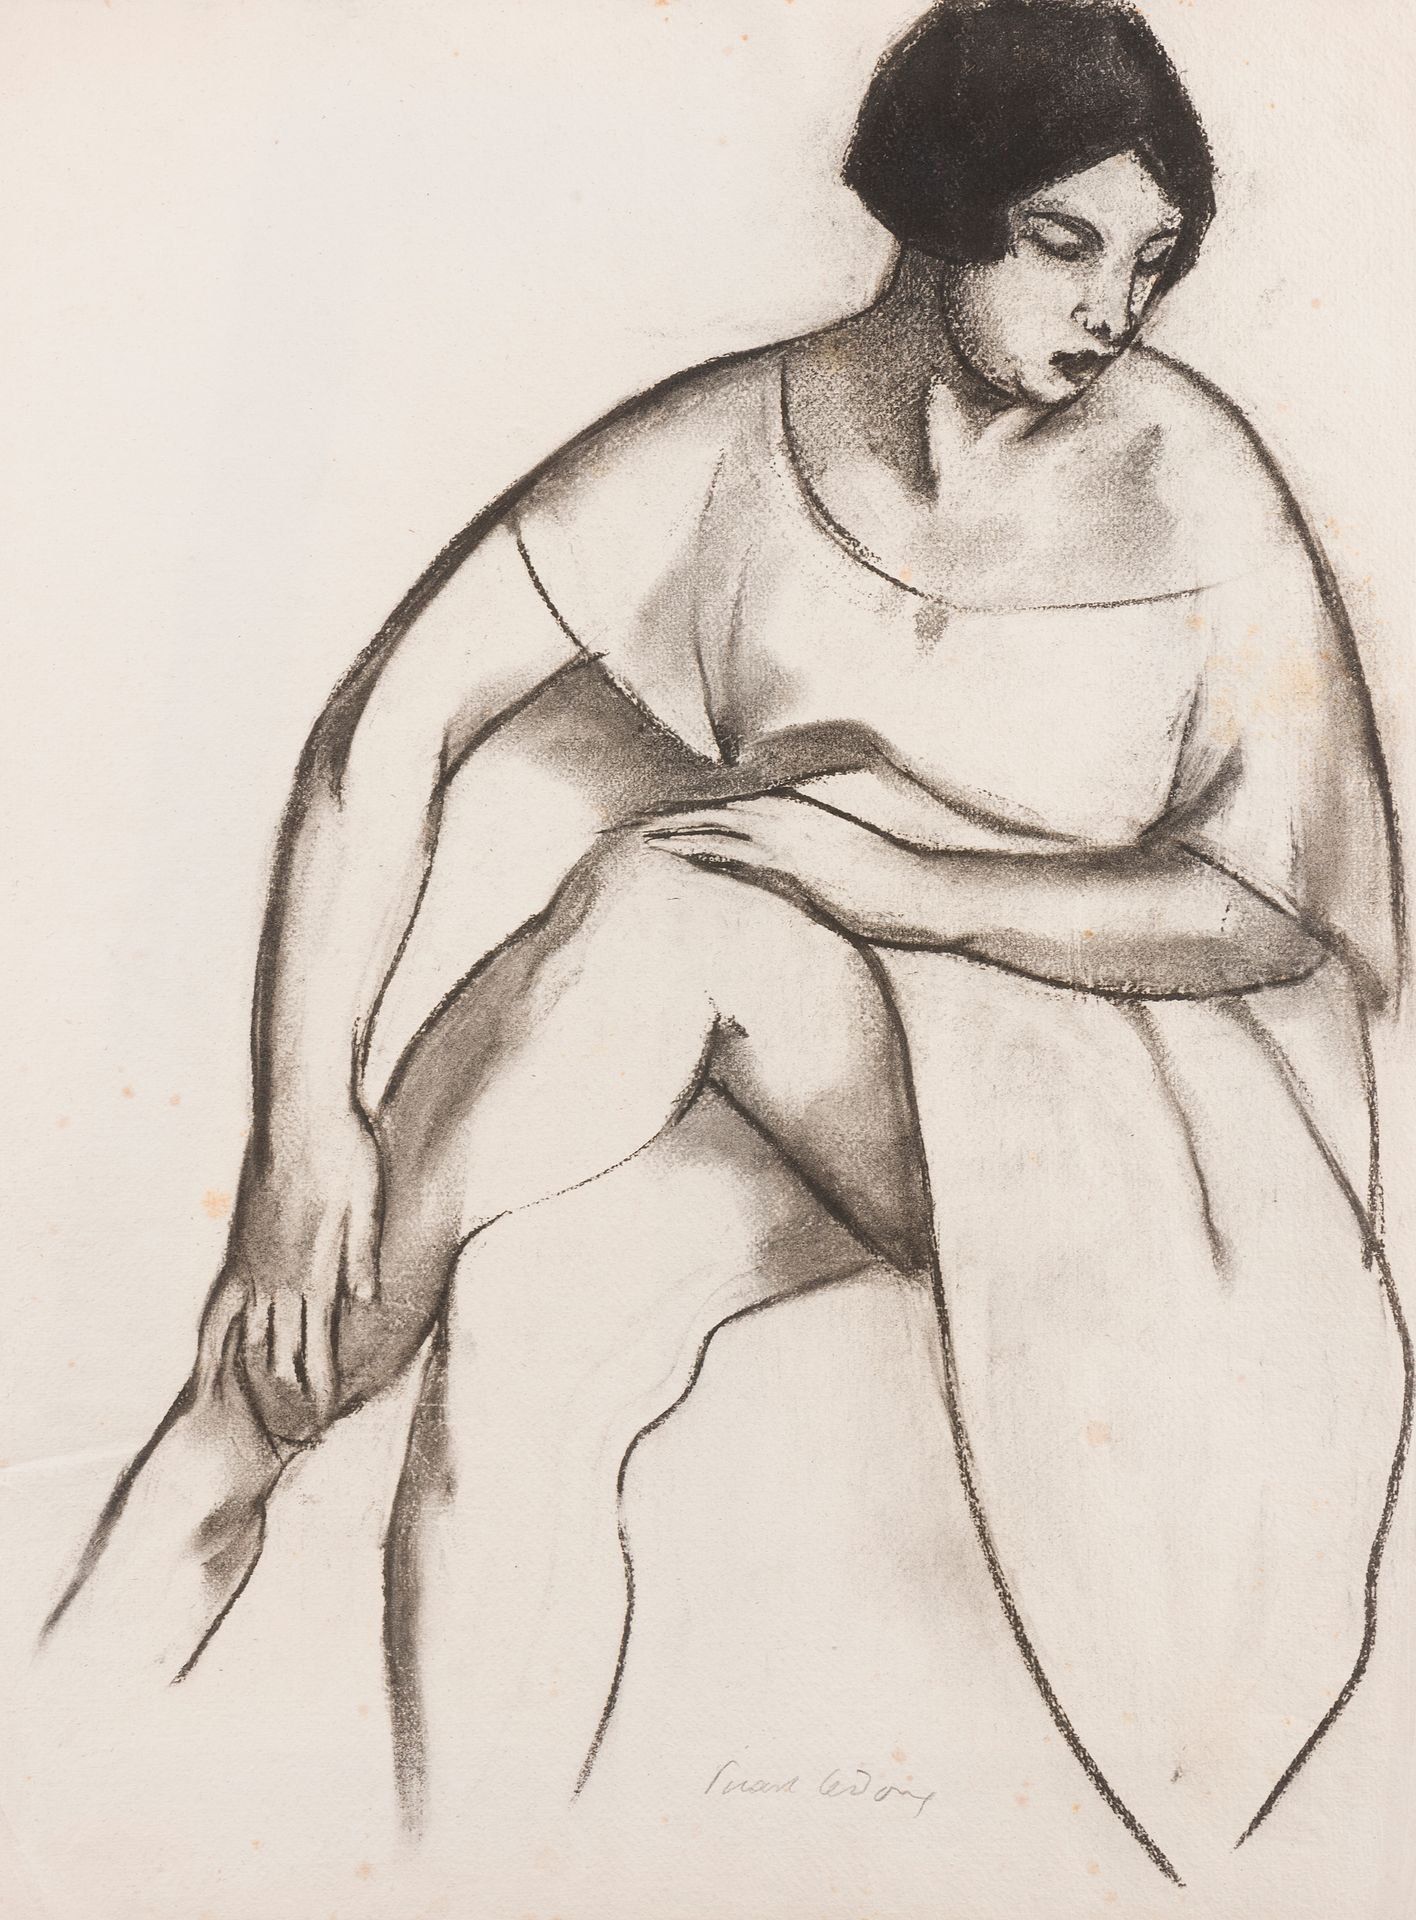 Null 夏尔-皮卡特-勒杜(1881-1959)
皮卡特-勒-杜克斯夫人坐着，1925年
底部中央有签名的炭笔画
63 x 47 cm